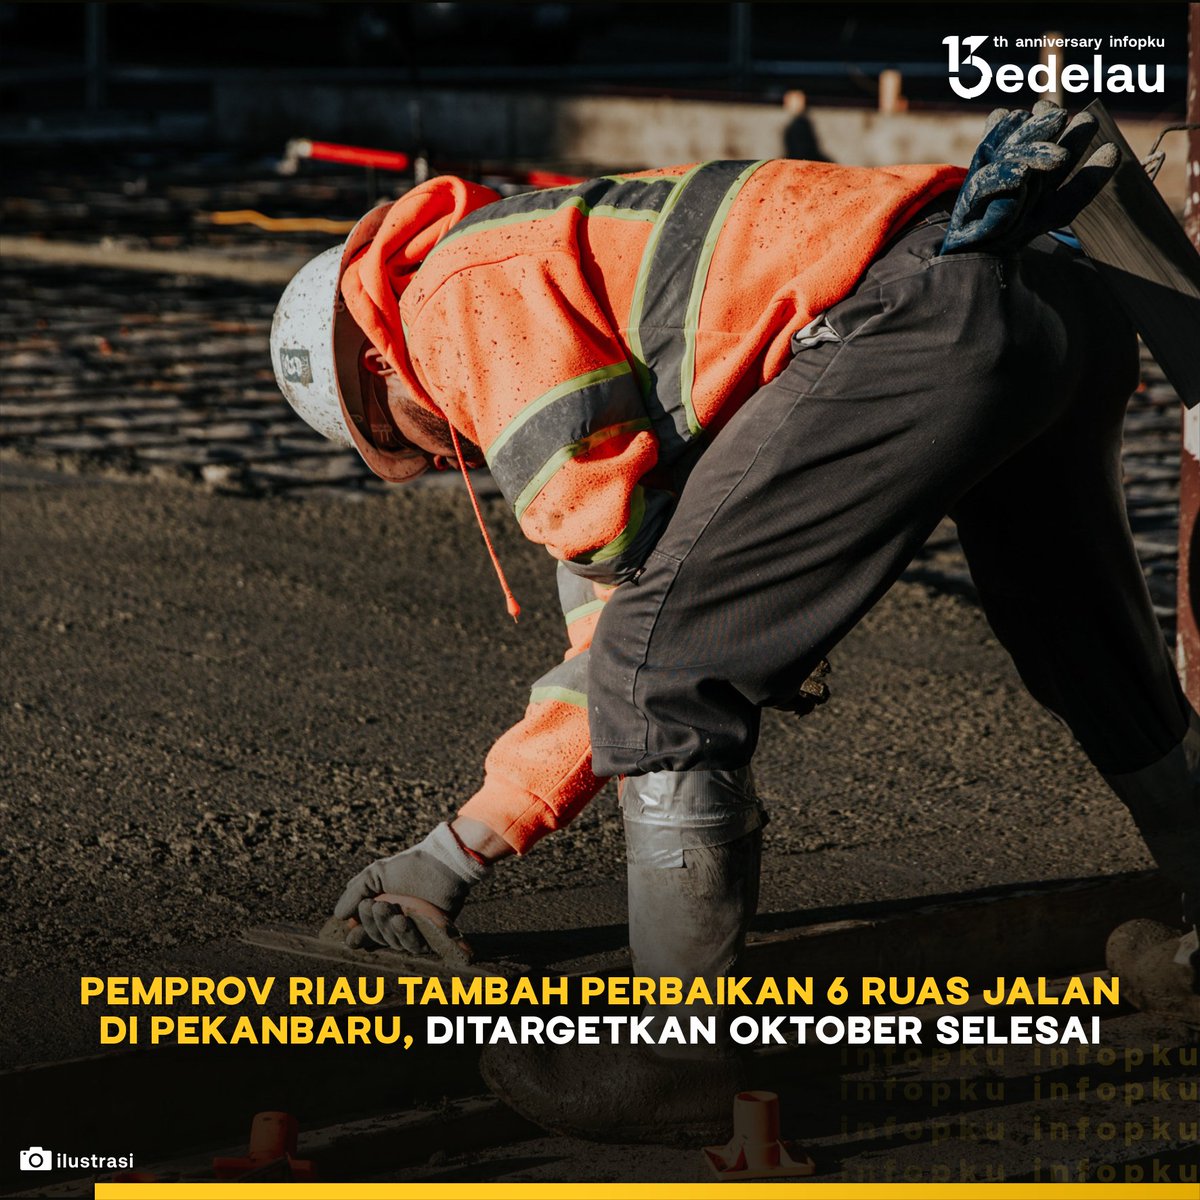 Pemerintah Provinsi Riau telah menerima pengalihan kewenangan 16 ruas jalan dari Pemerintah Kota (Pemkot) Pekanbaru. Secara bertahap sejumlah ruas jalan yang telah dialihkan sudah di aspal mulus.

#infoPKU #jalanPKU